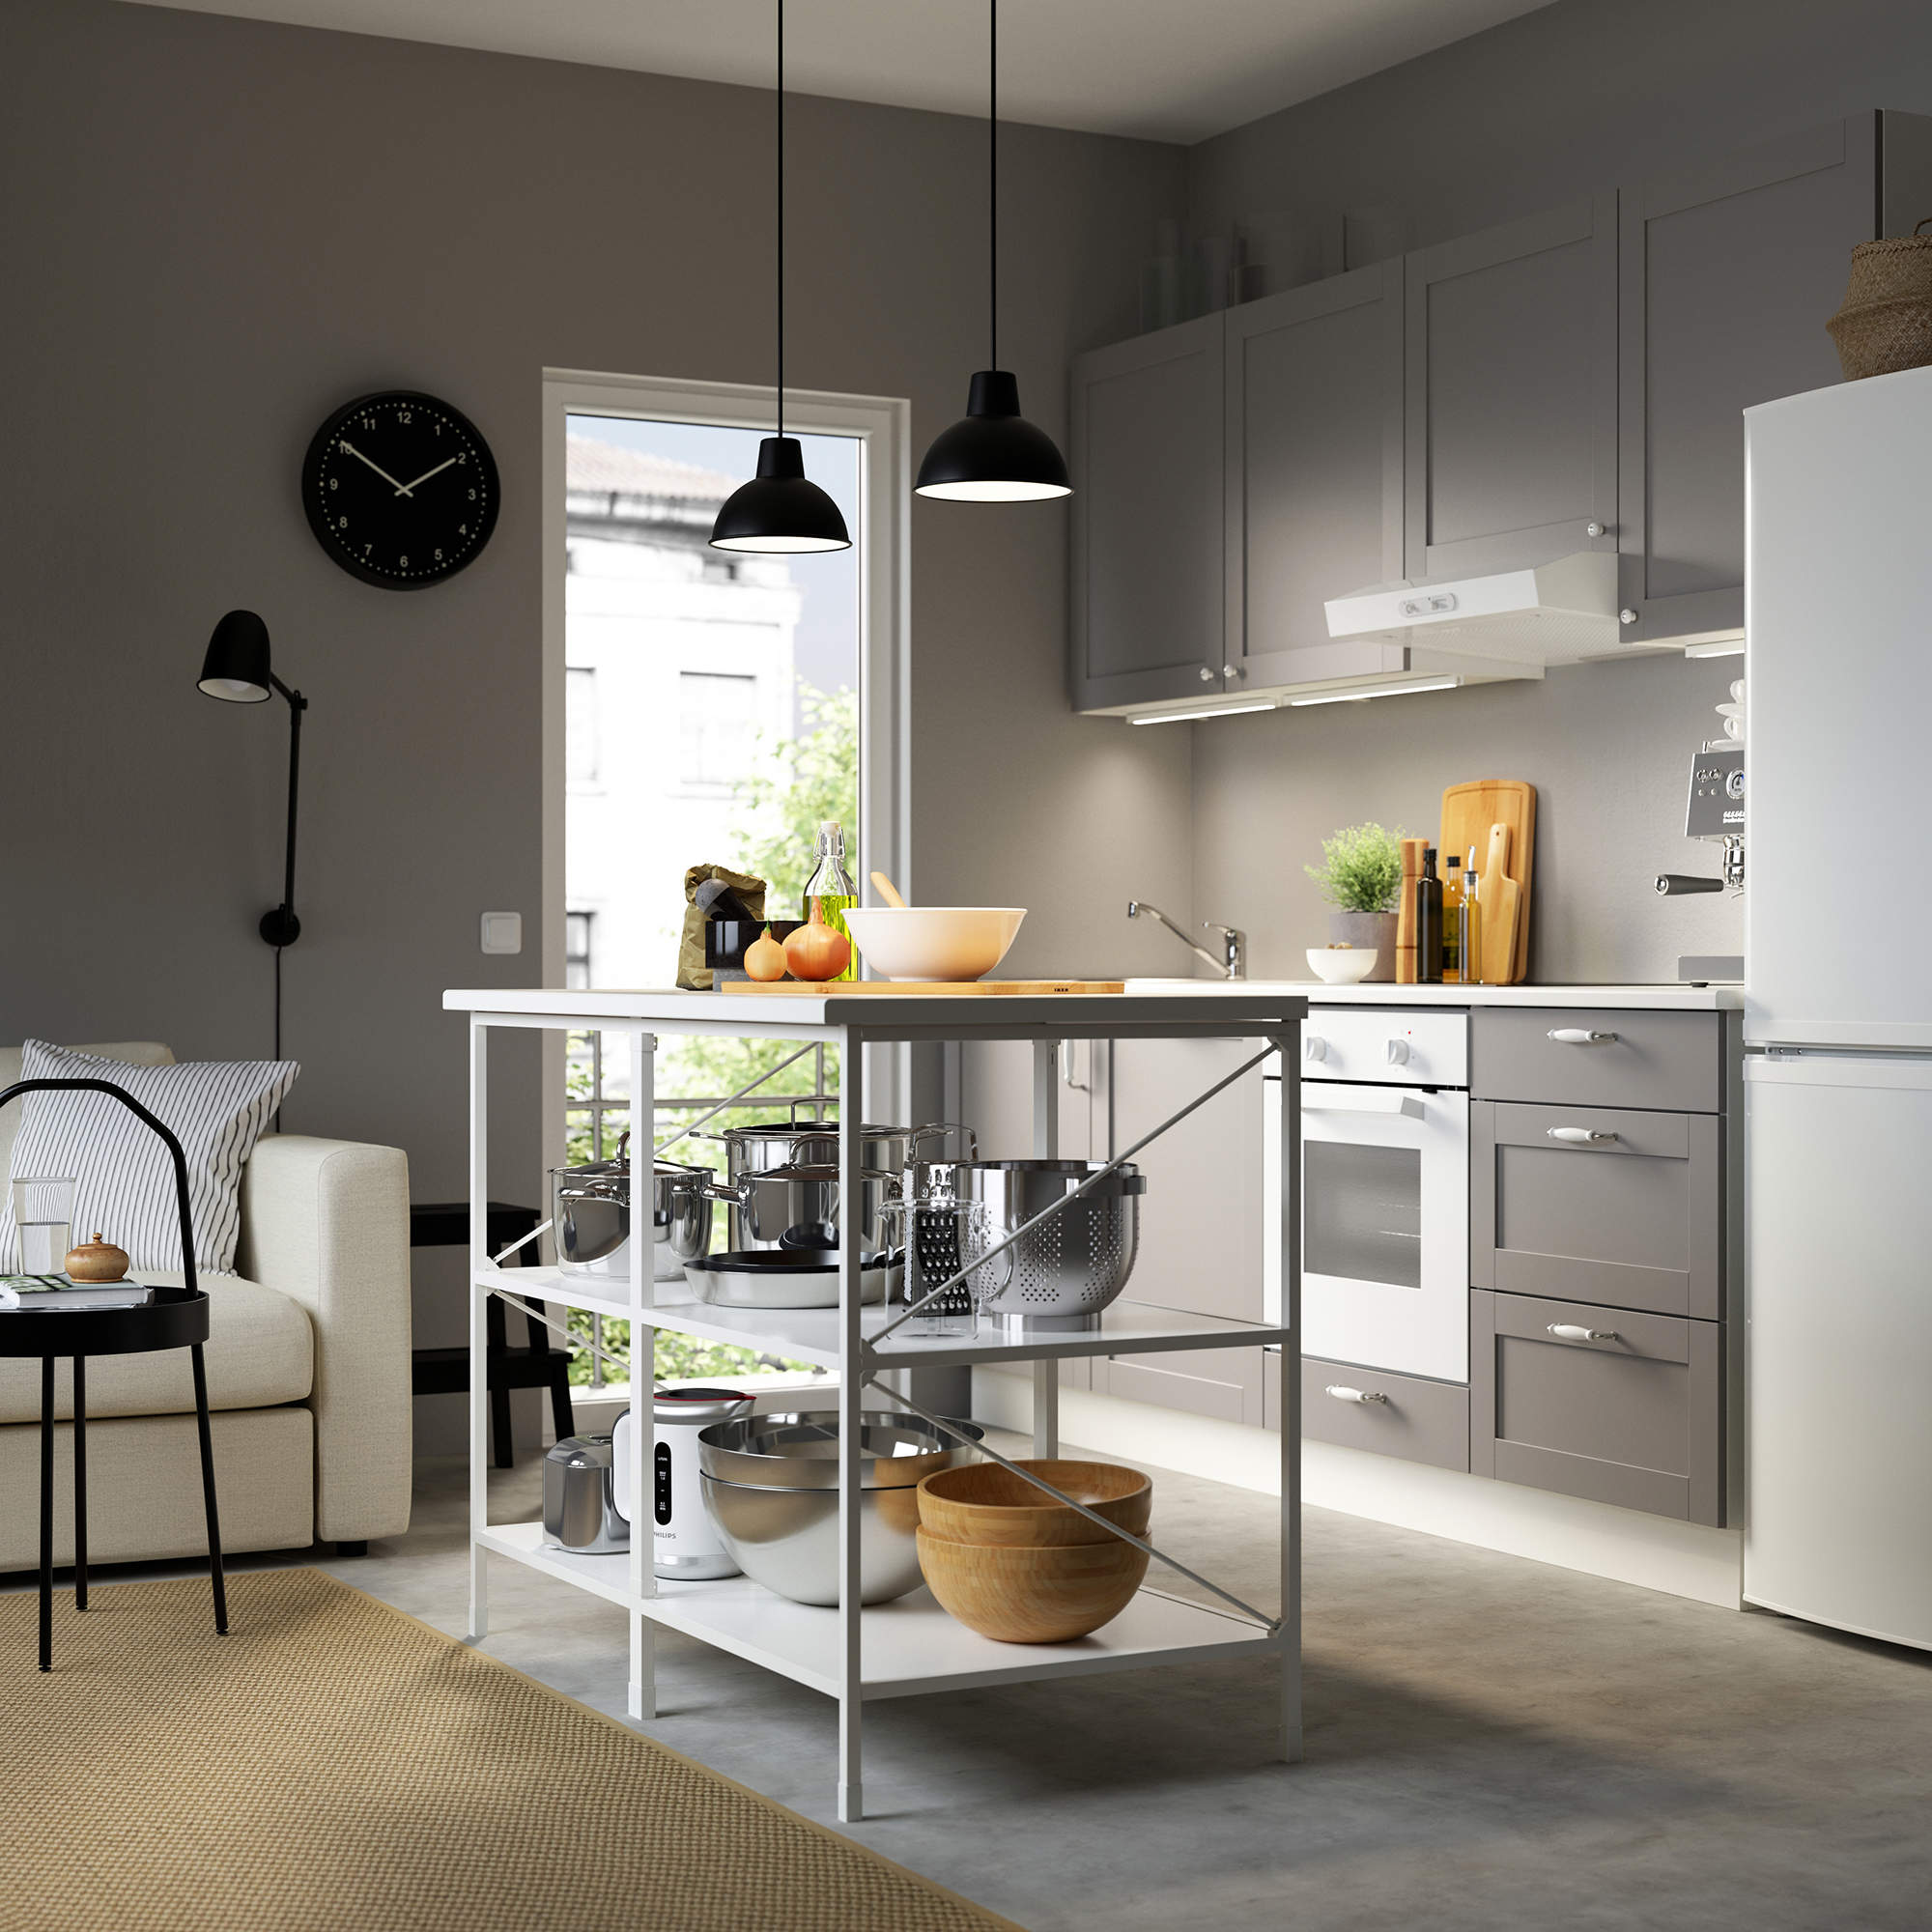 Pequeña cocina abierta con muebles en gris y mueble auxiliar con estantes